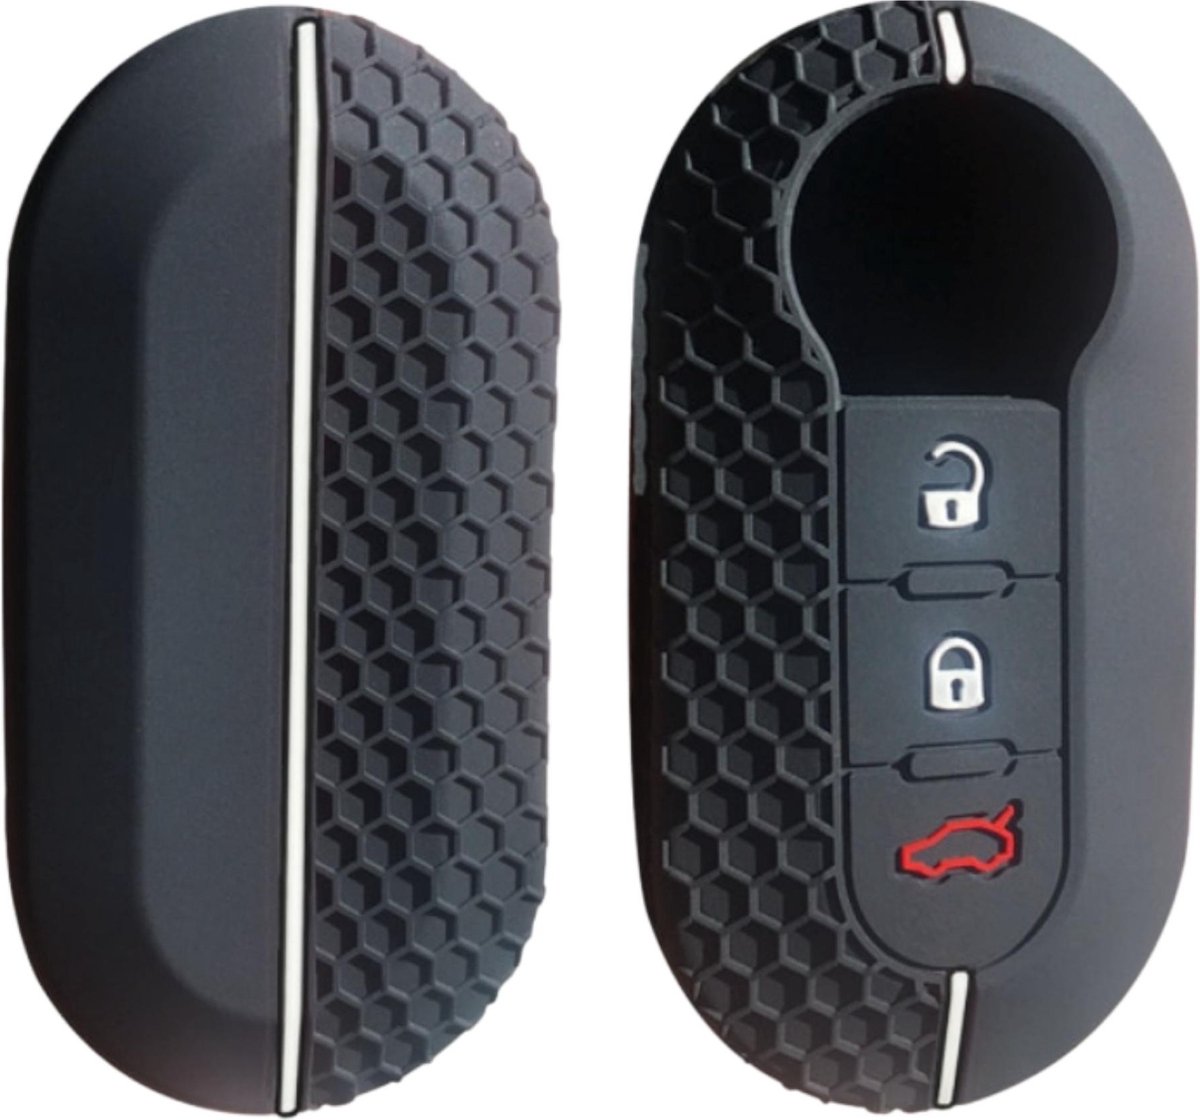 Siliconen Sleutelcover SPORT - Witte Details - Zwart Sleutelhoesje Geschikt voor Fiat 500 / 500L / 500X / 500C / Panda / Punto / Stilo - Sleutel Hoesje Keycover - Auto Accessoires